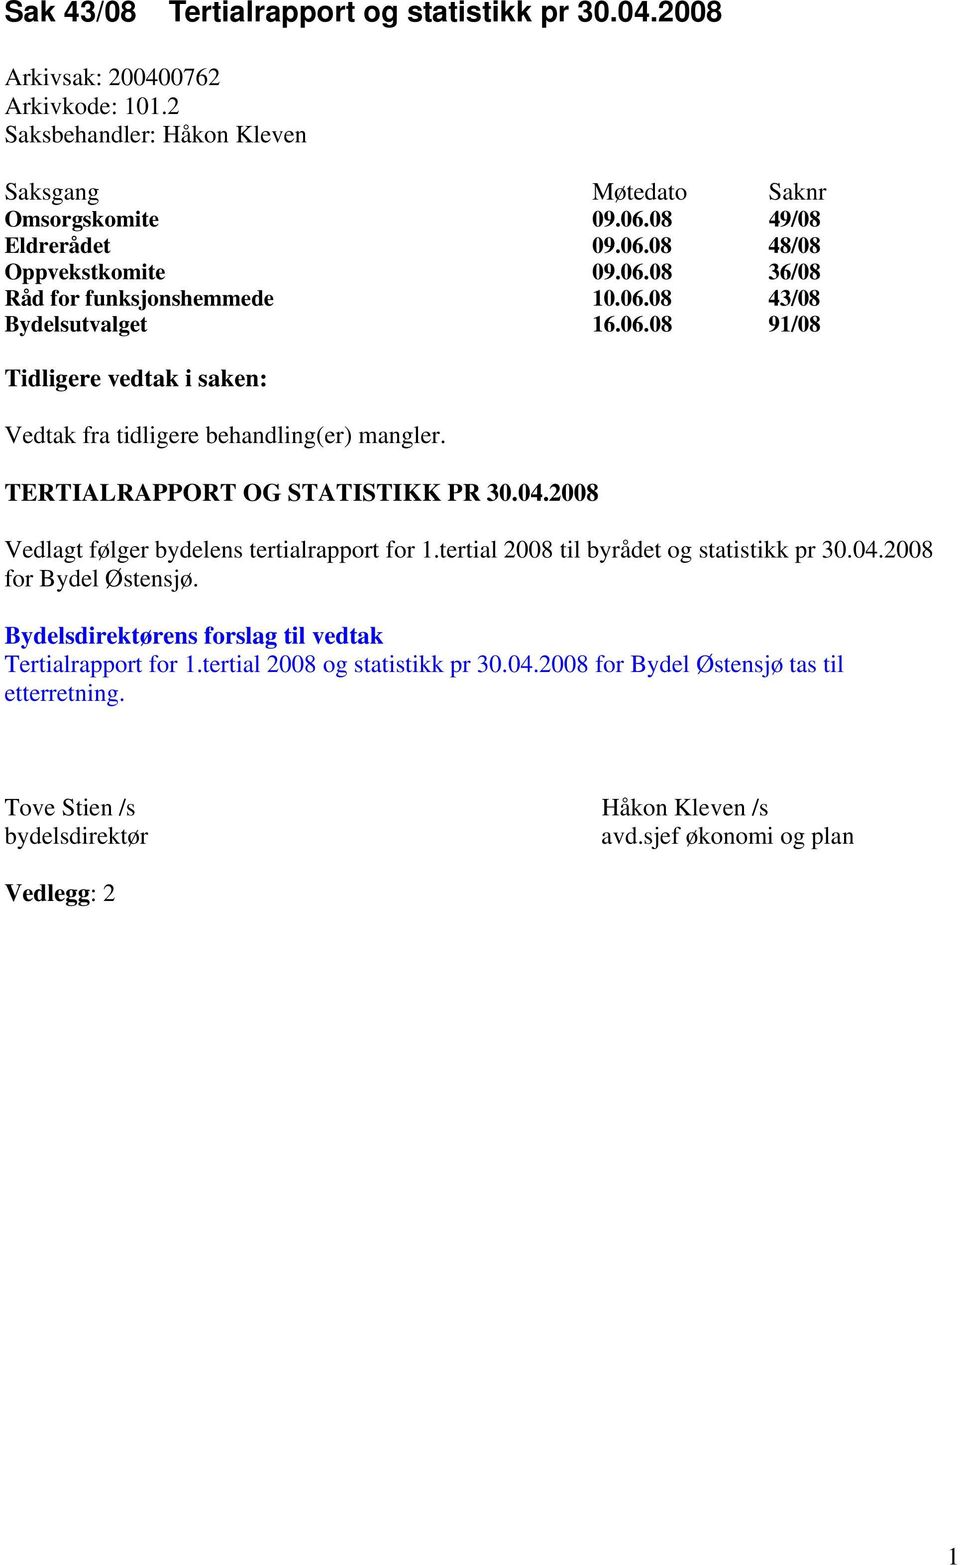 TERTIALRAPPORT OG STATISTIKK PR 30.04.2008 Vedlagt følger bydelens tertialrapport for 1.tertial 2008 til byrådet og statistikk pr 30.04.2008 for Bydel Østensjø.